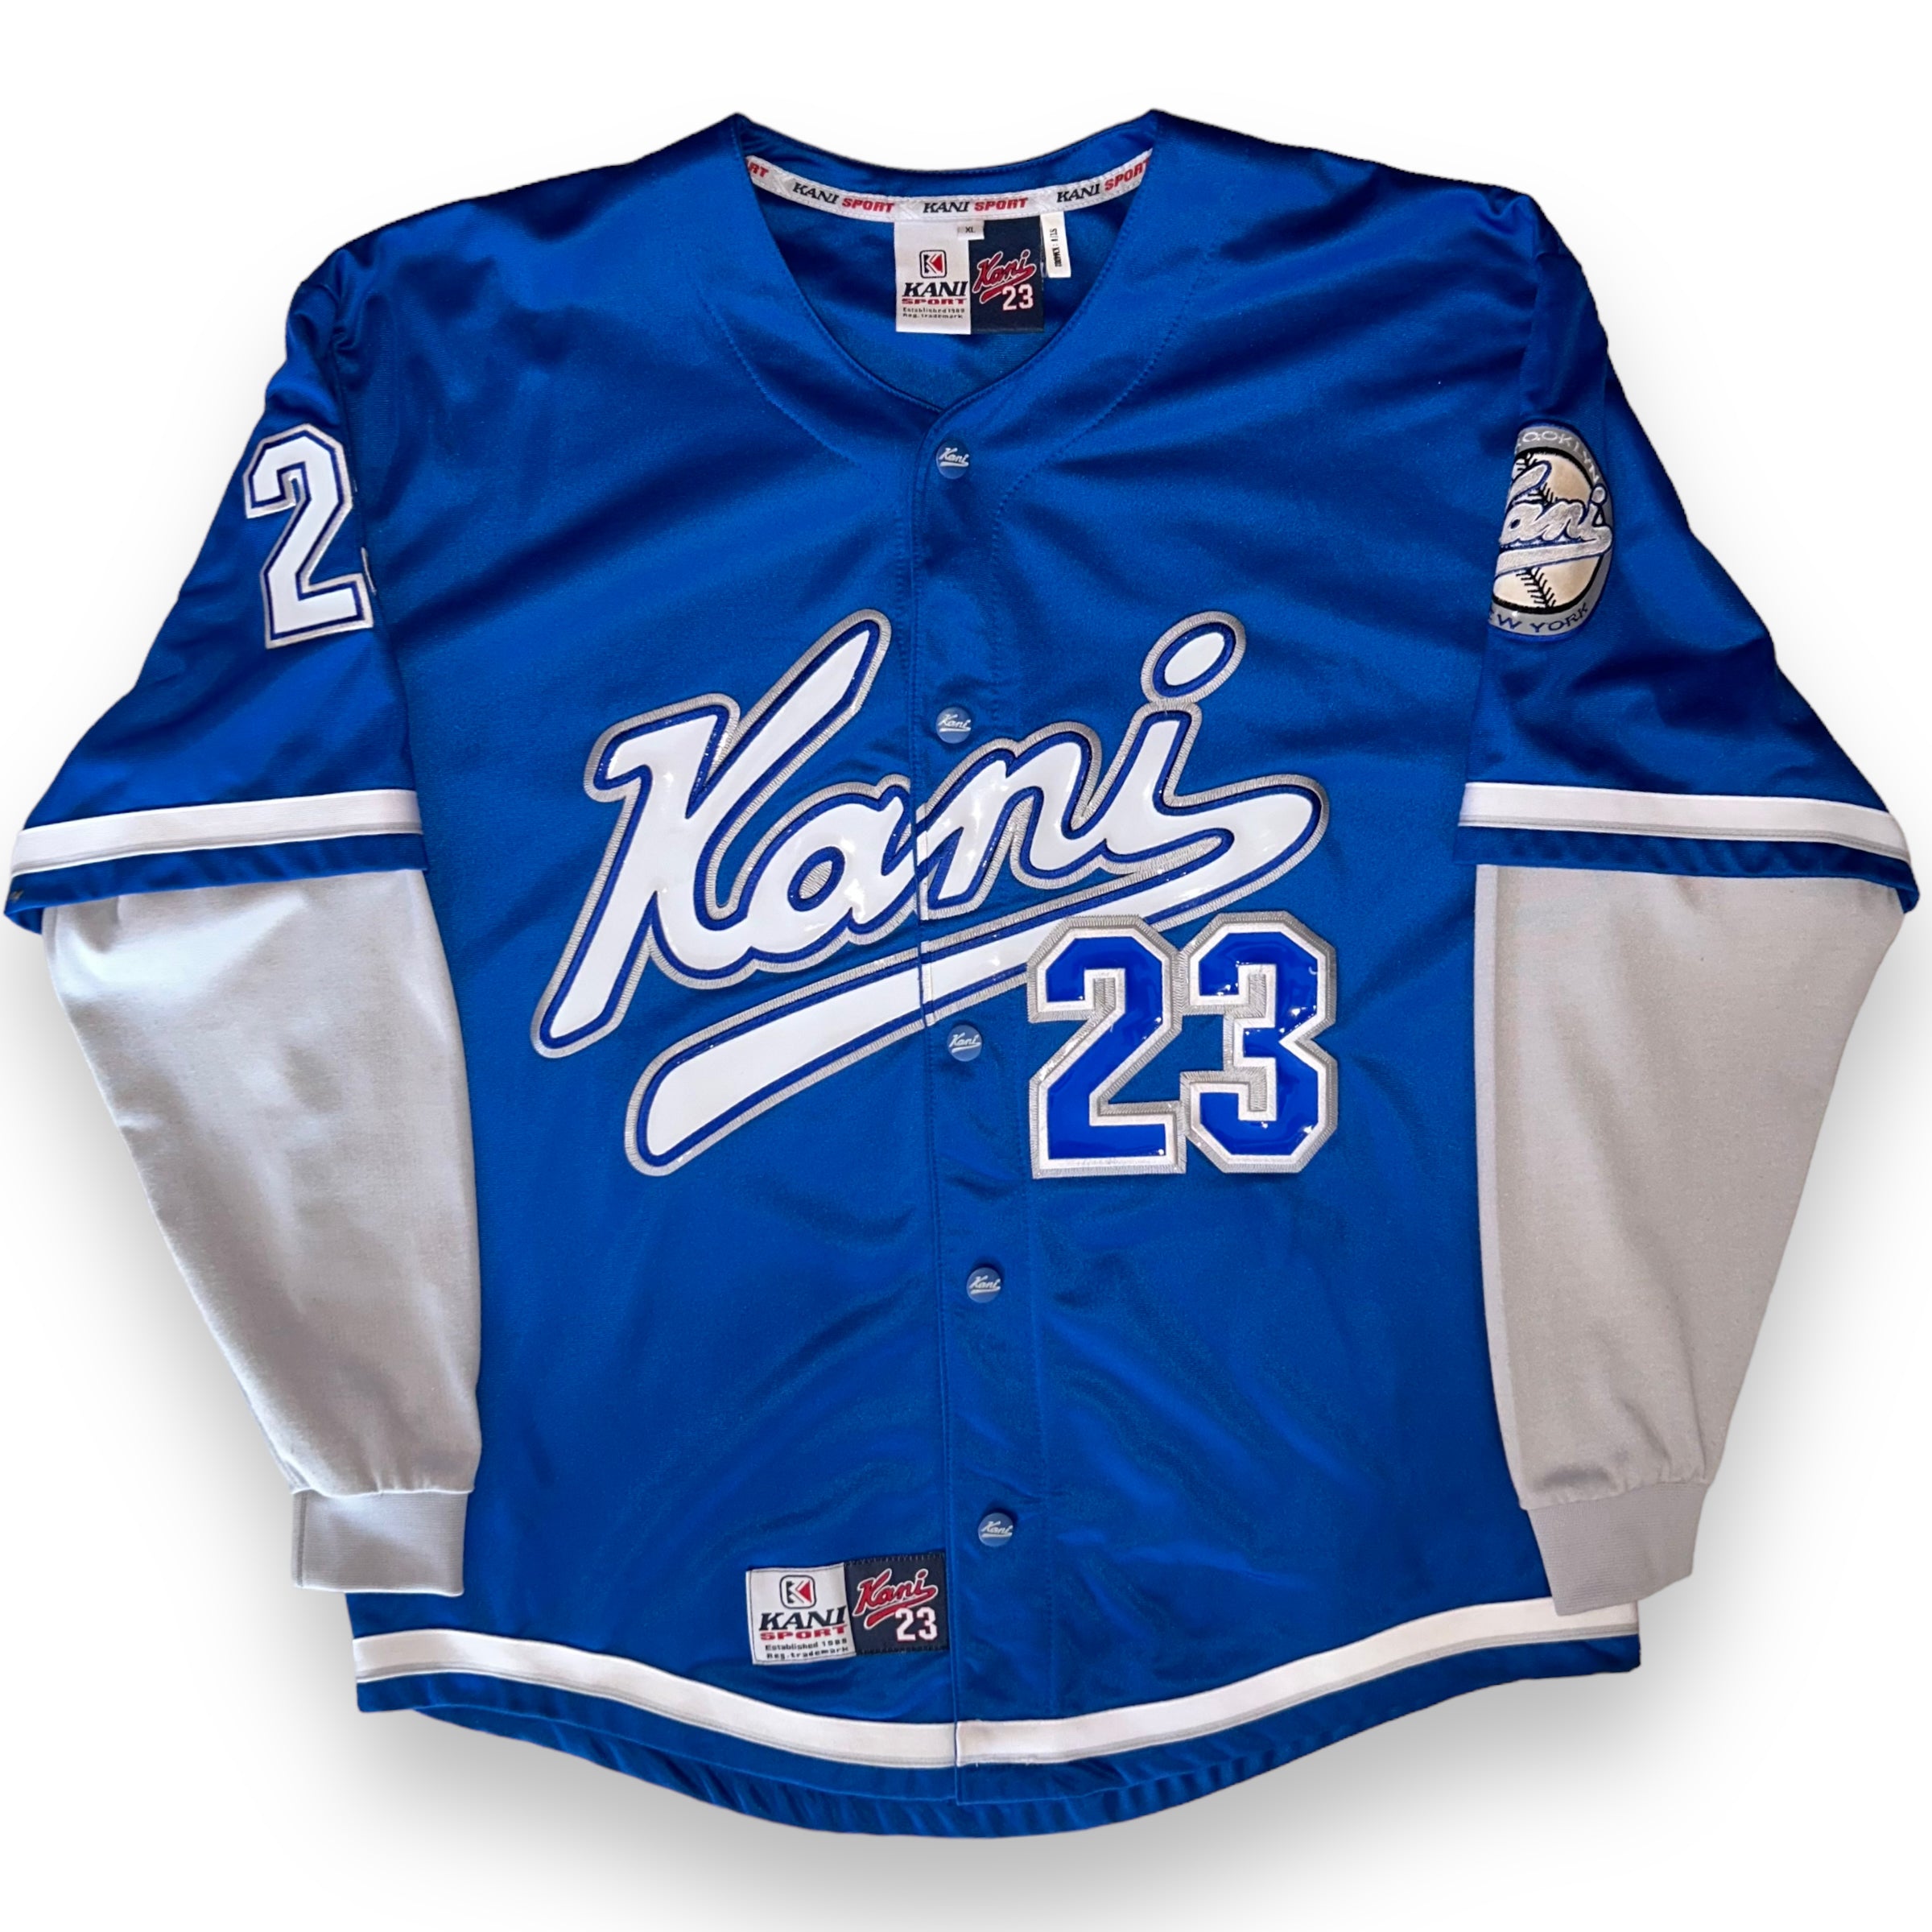 Vintage Karl Kani Jersey (XL)